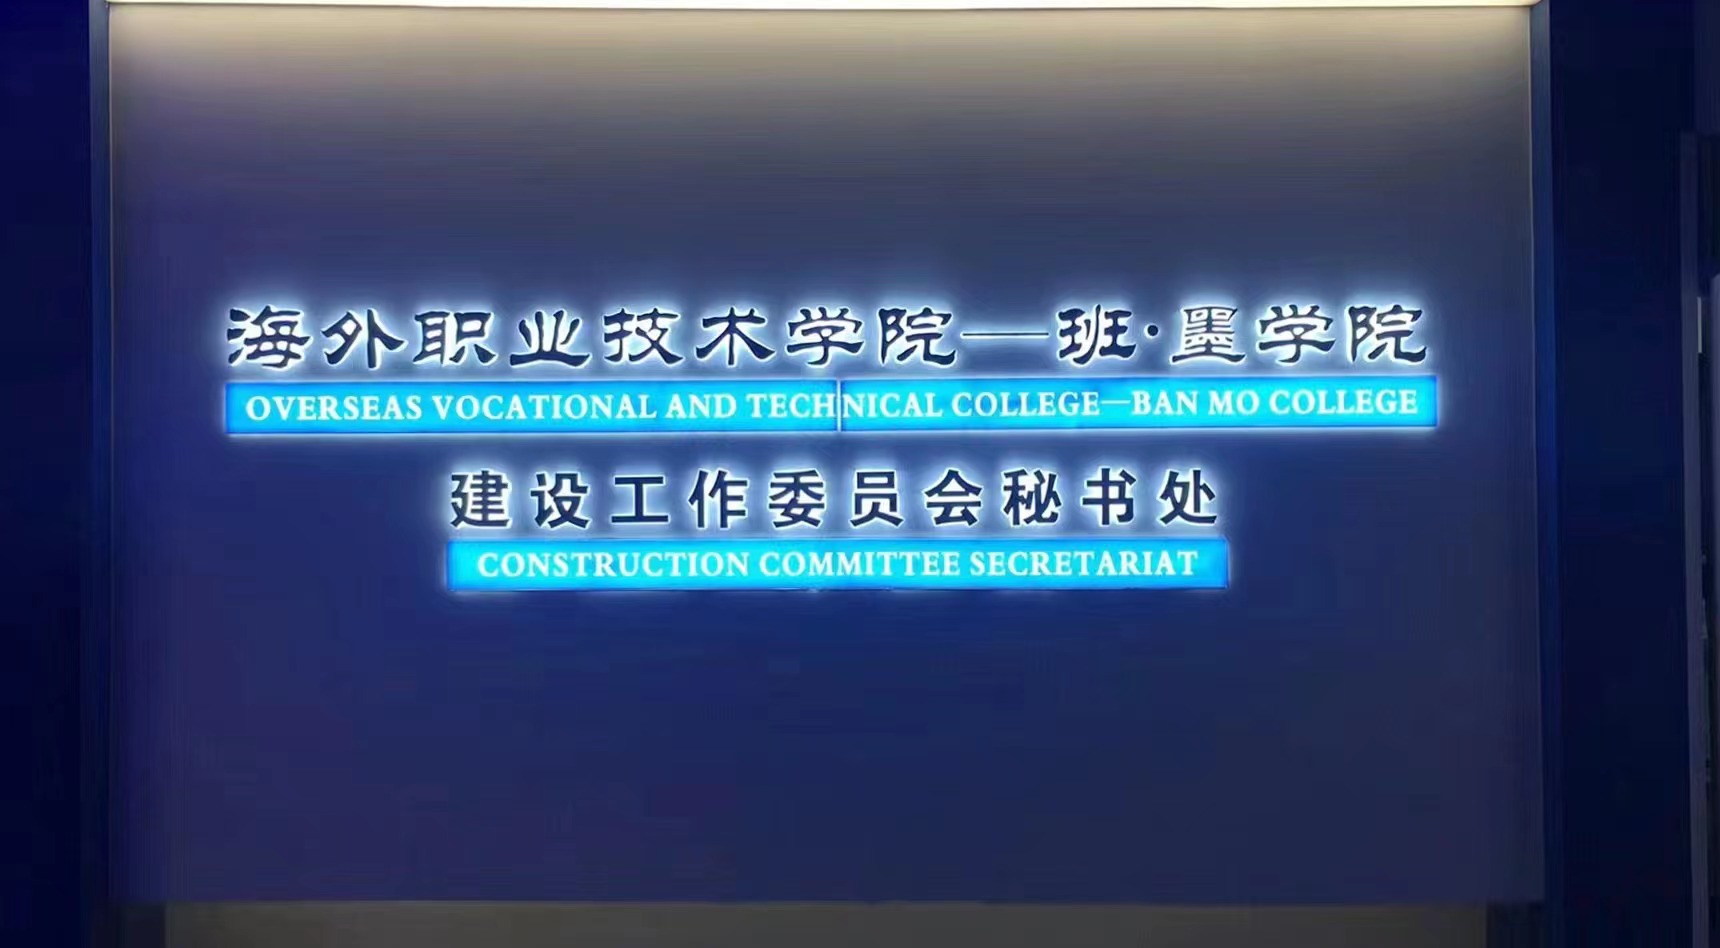 鲁昕部长莅临海外职业技术学院-班墨学院建设工作委员会秘书处